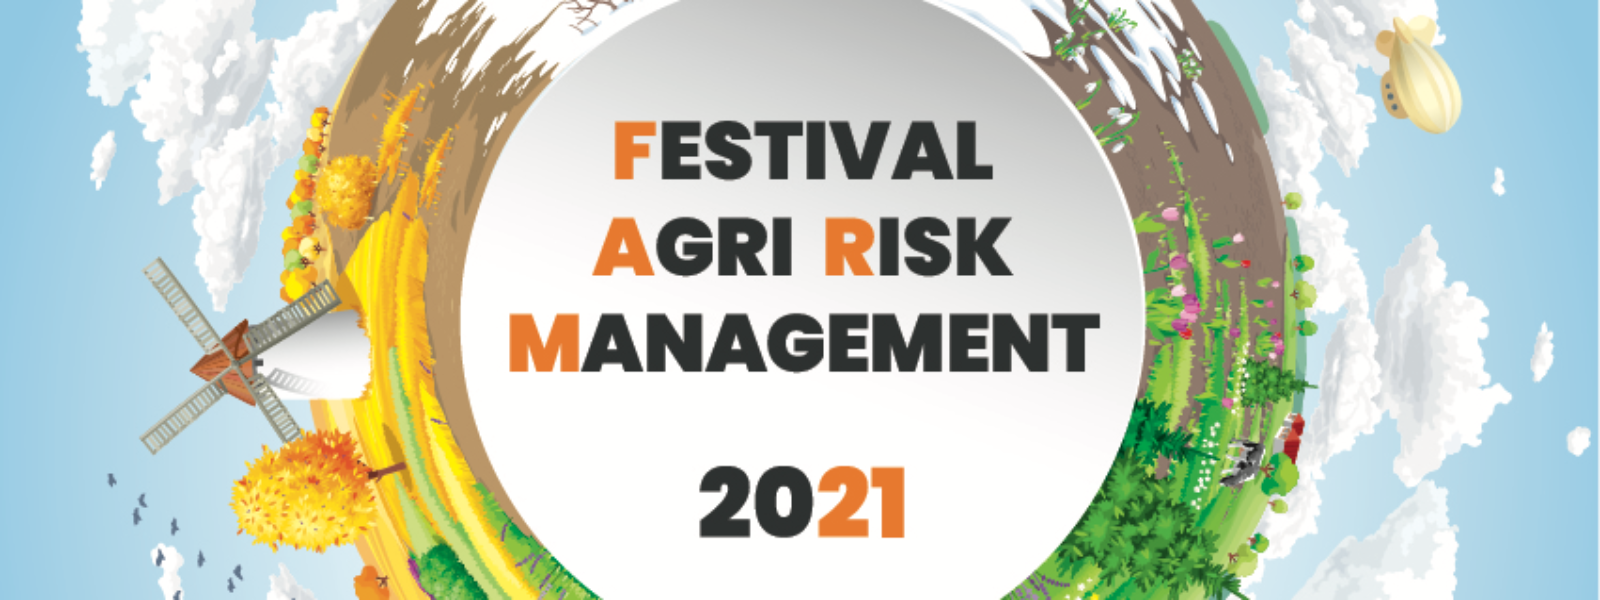 Agri risk management festival